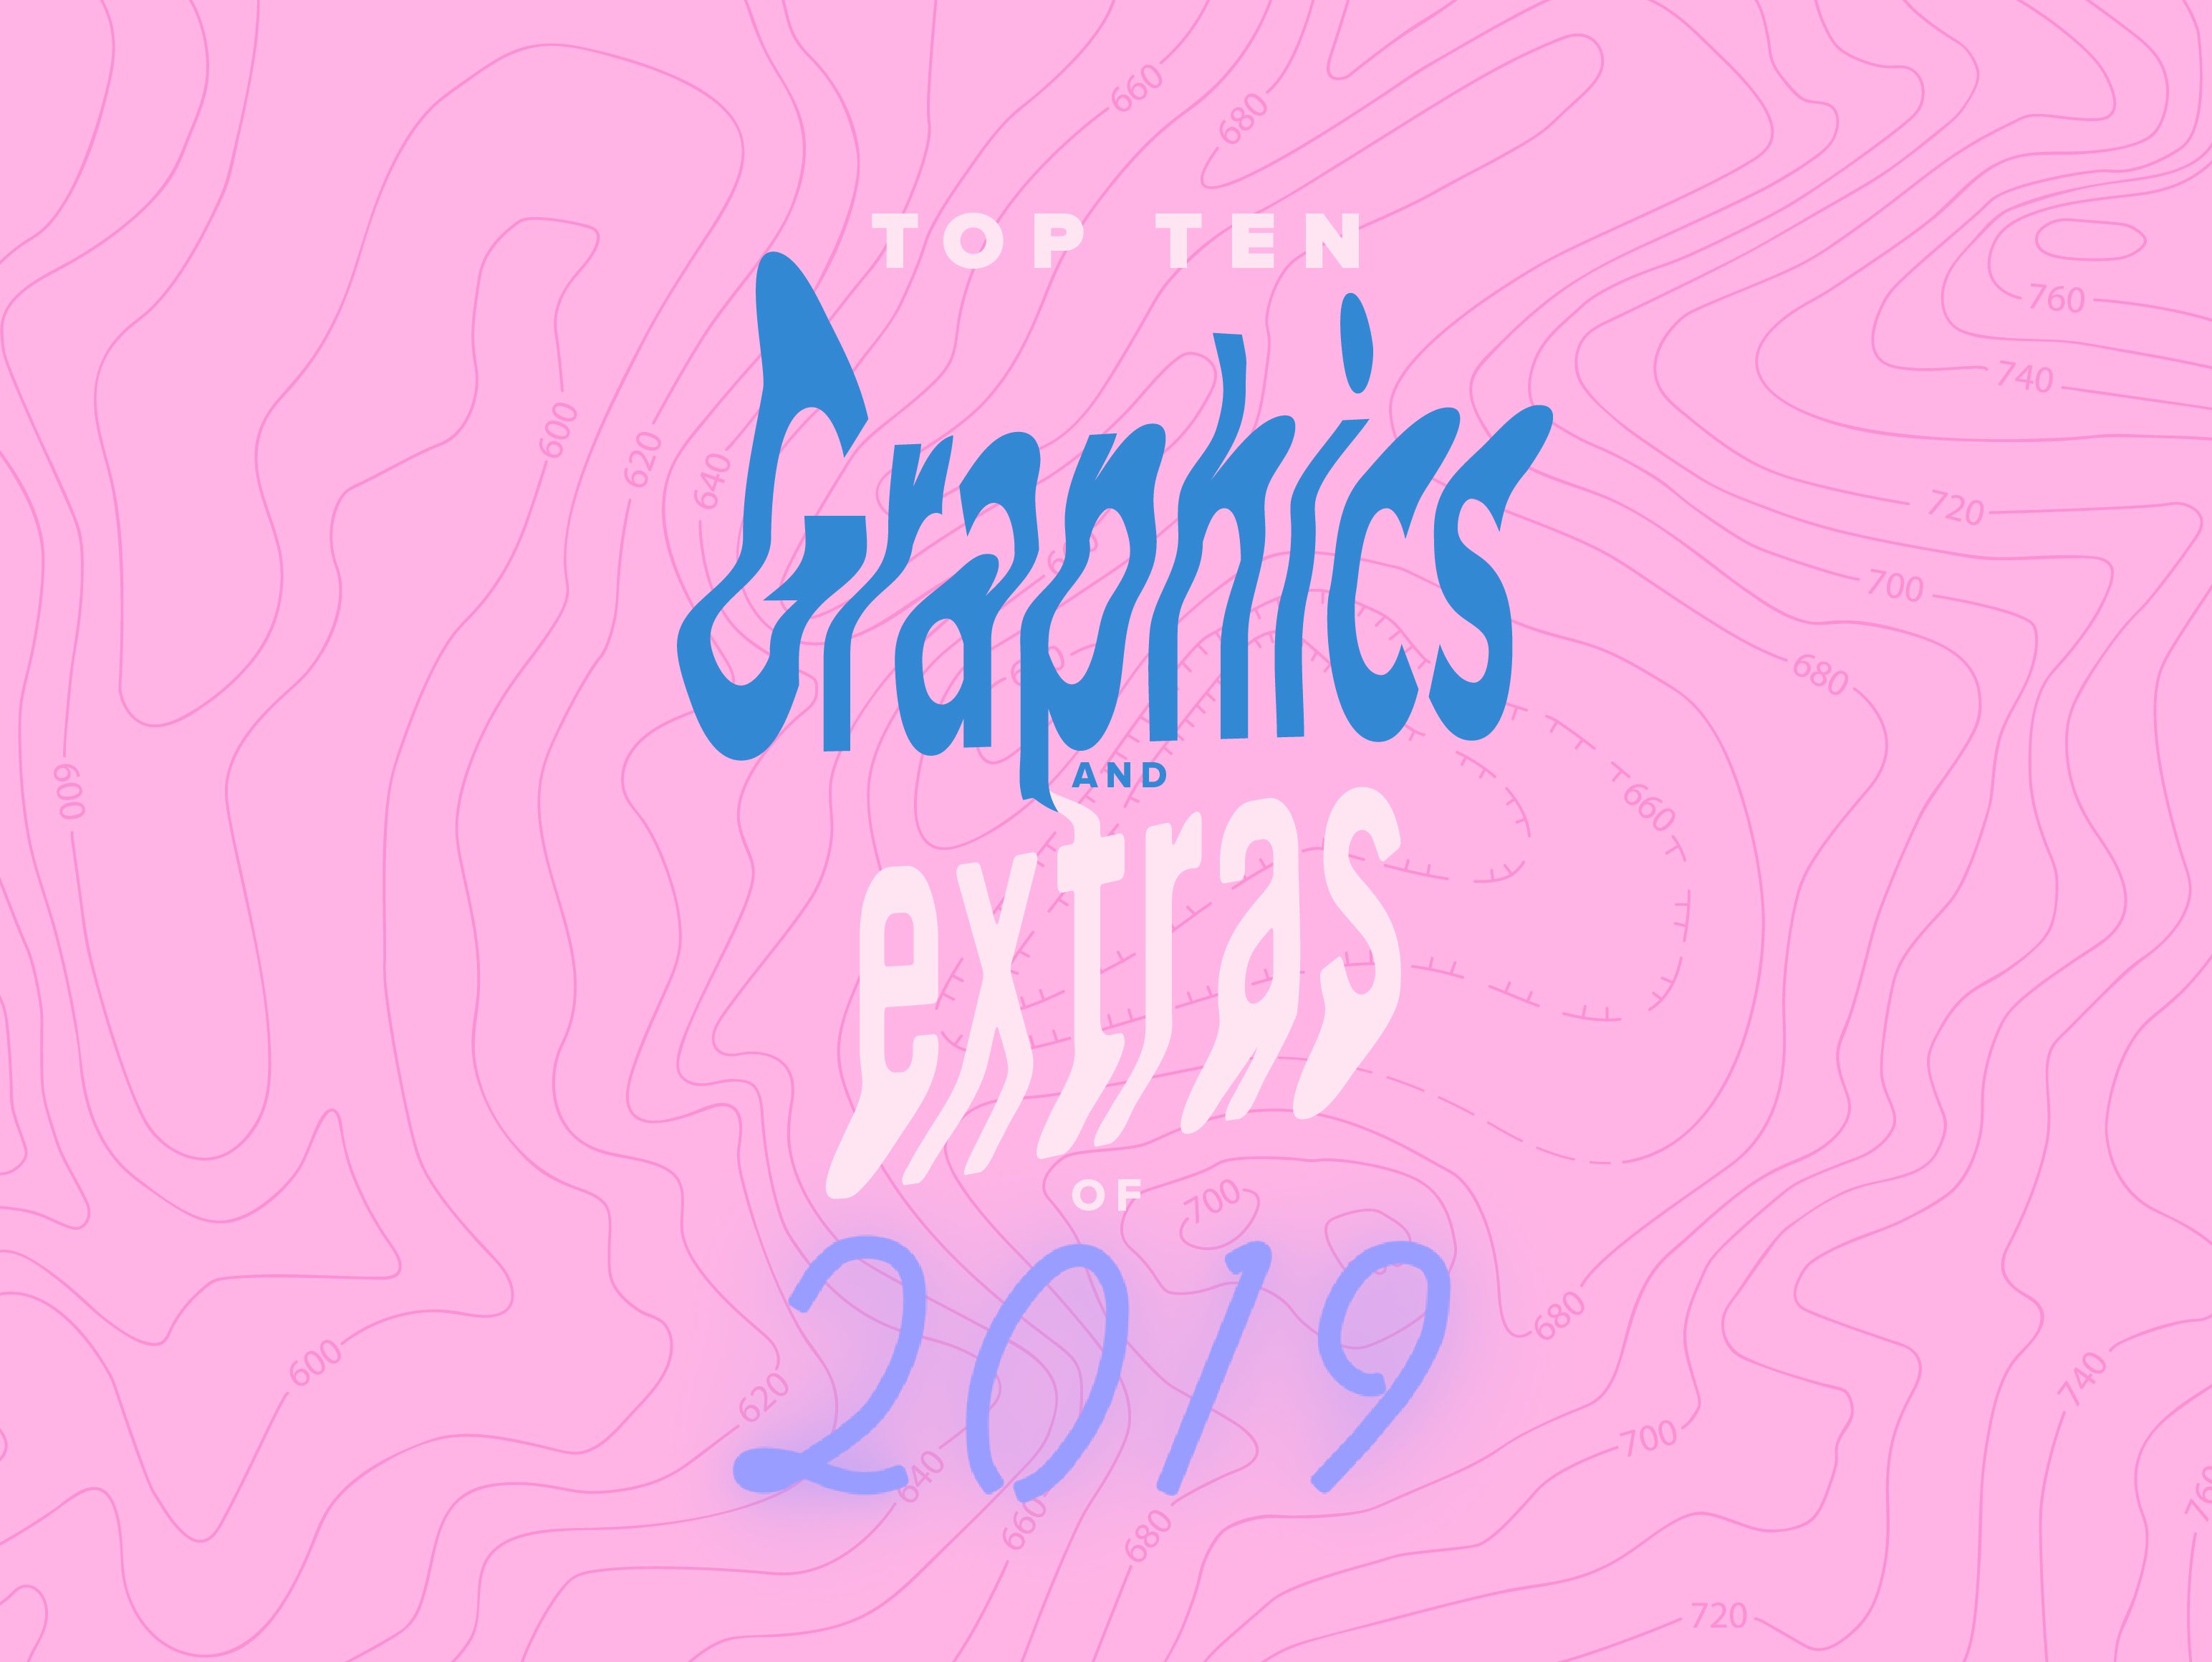 Top Ten Graphics & Extras of 2019